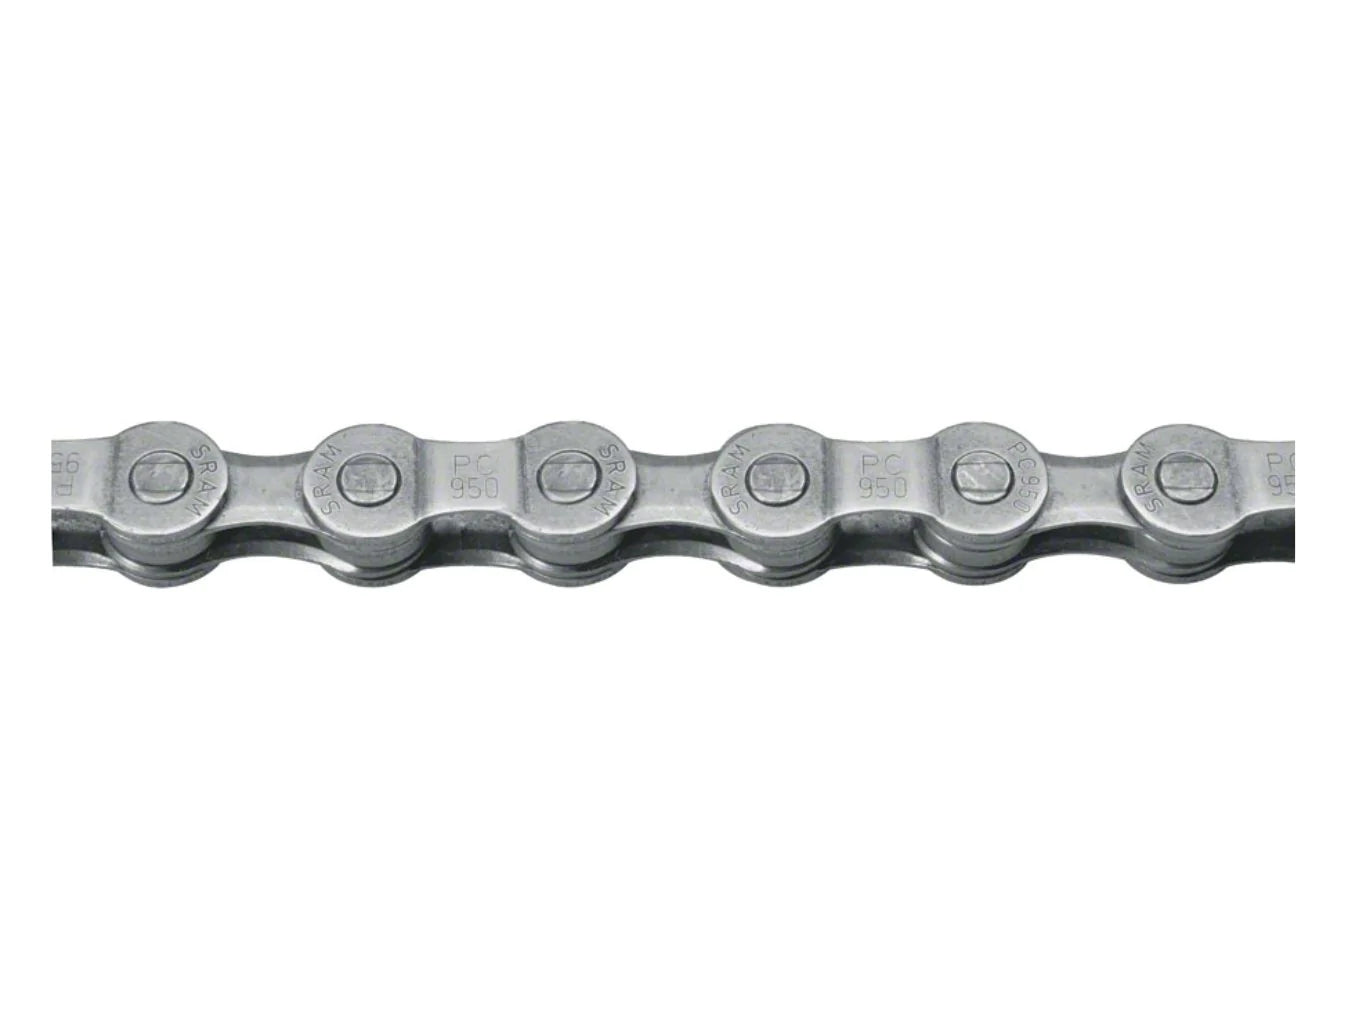 SRAM PC-951 Chain - 9-Speed, 114 Links, Gray